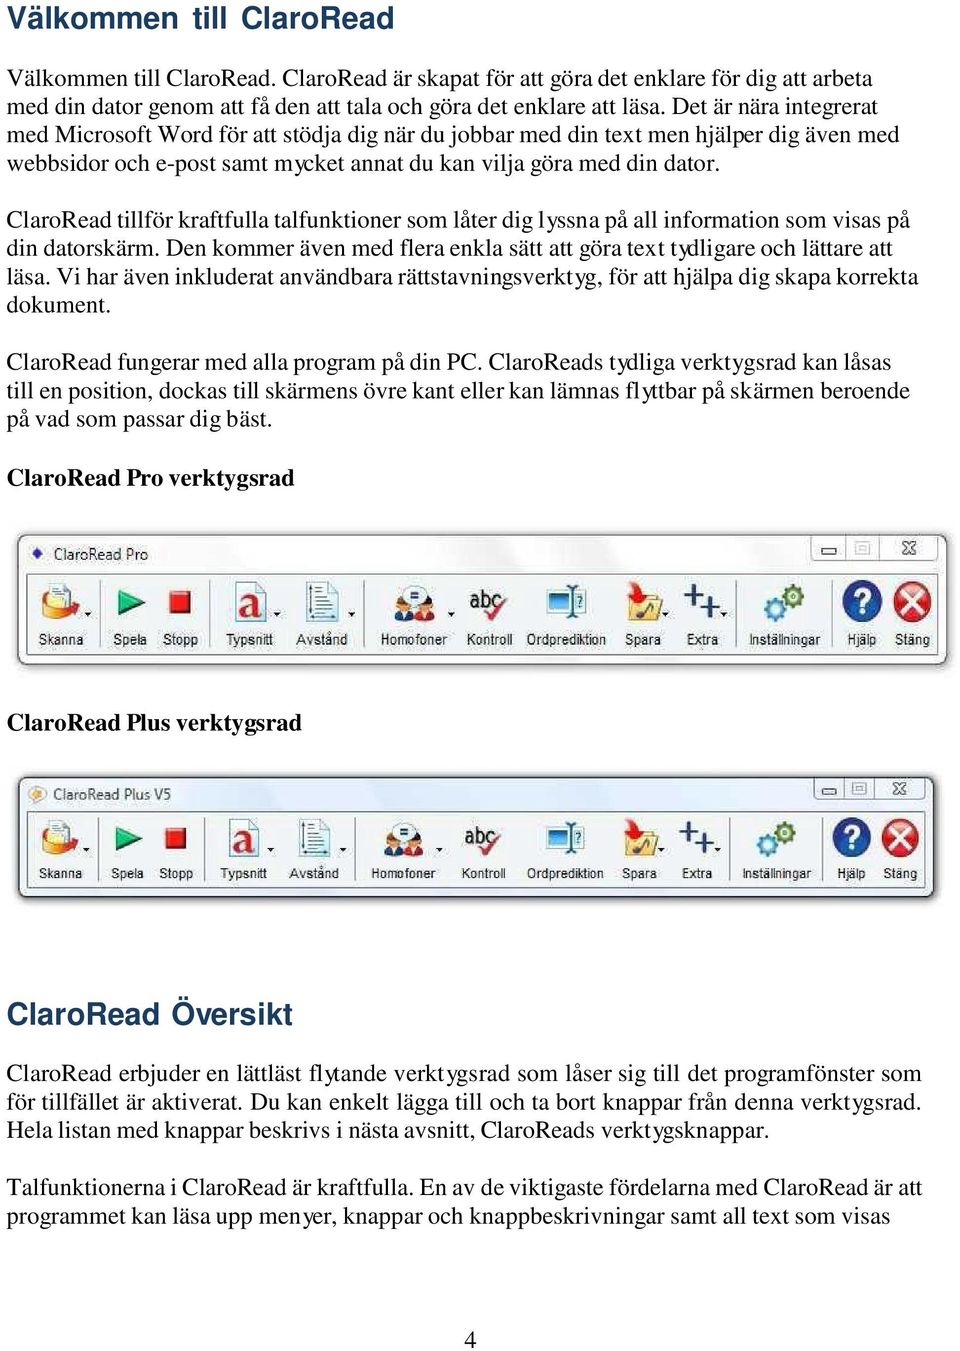 ClaroRead tillför kraftfulla talfunktioner som låter dig lyssna på all information som visas på din datorskärm. Den kommer även med flera enkla sätt att göra text tydligare och lättare att läsa.